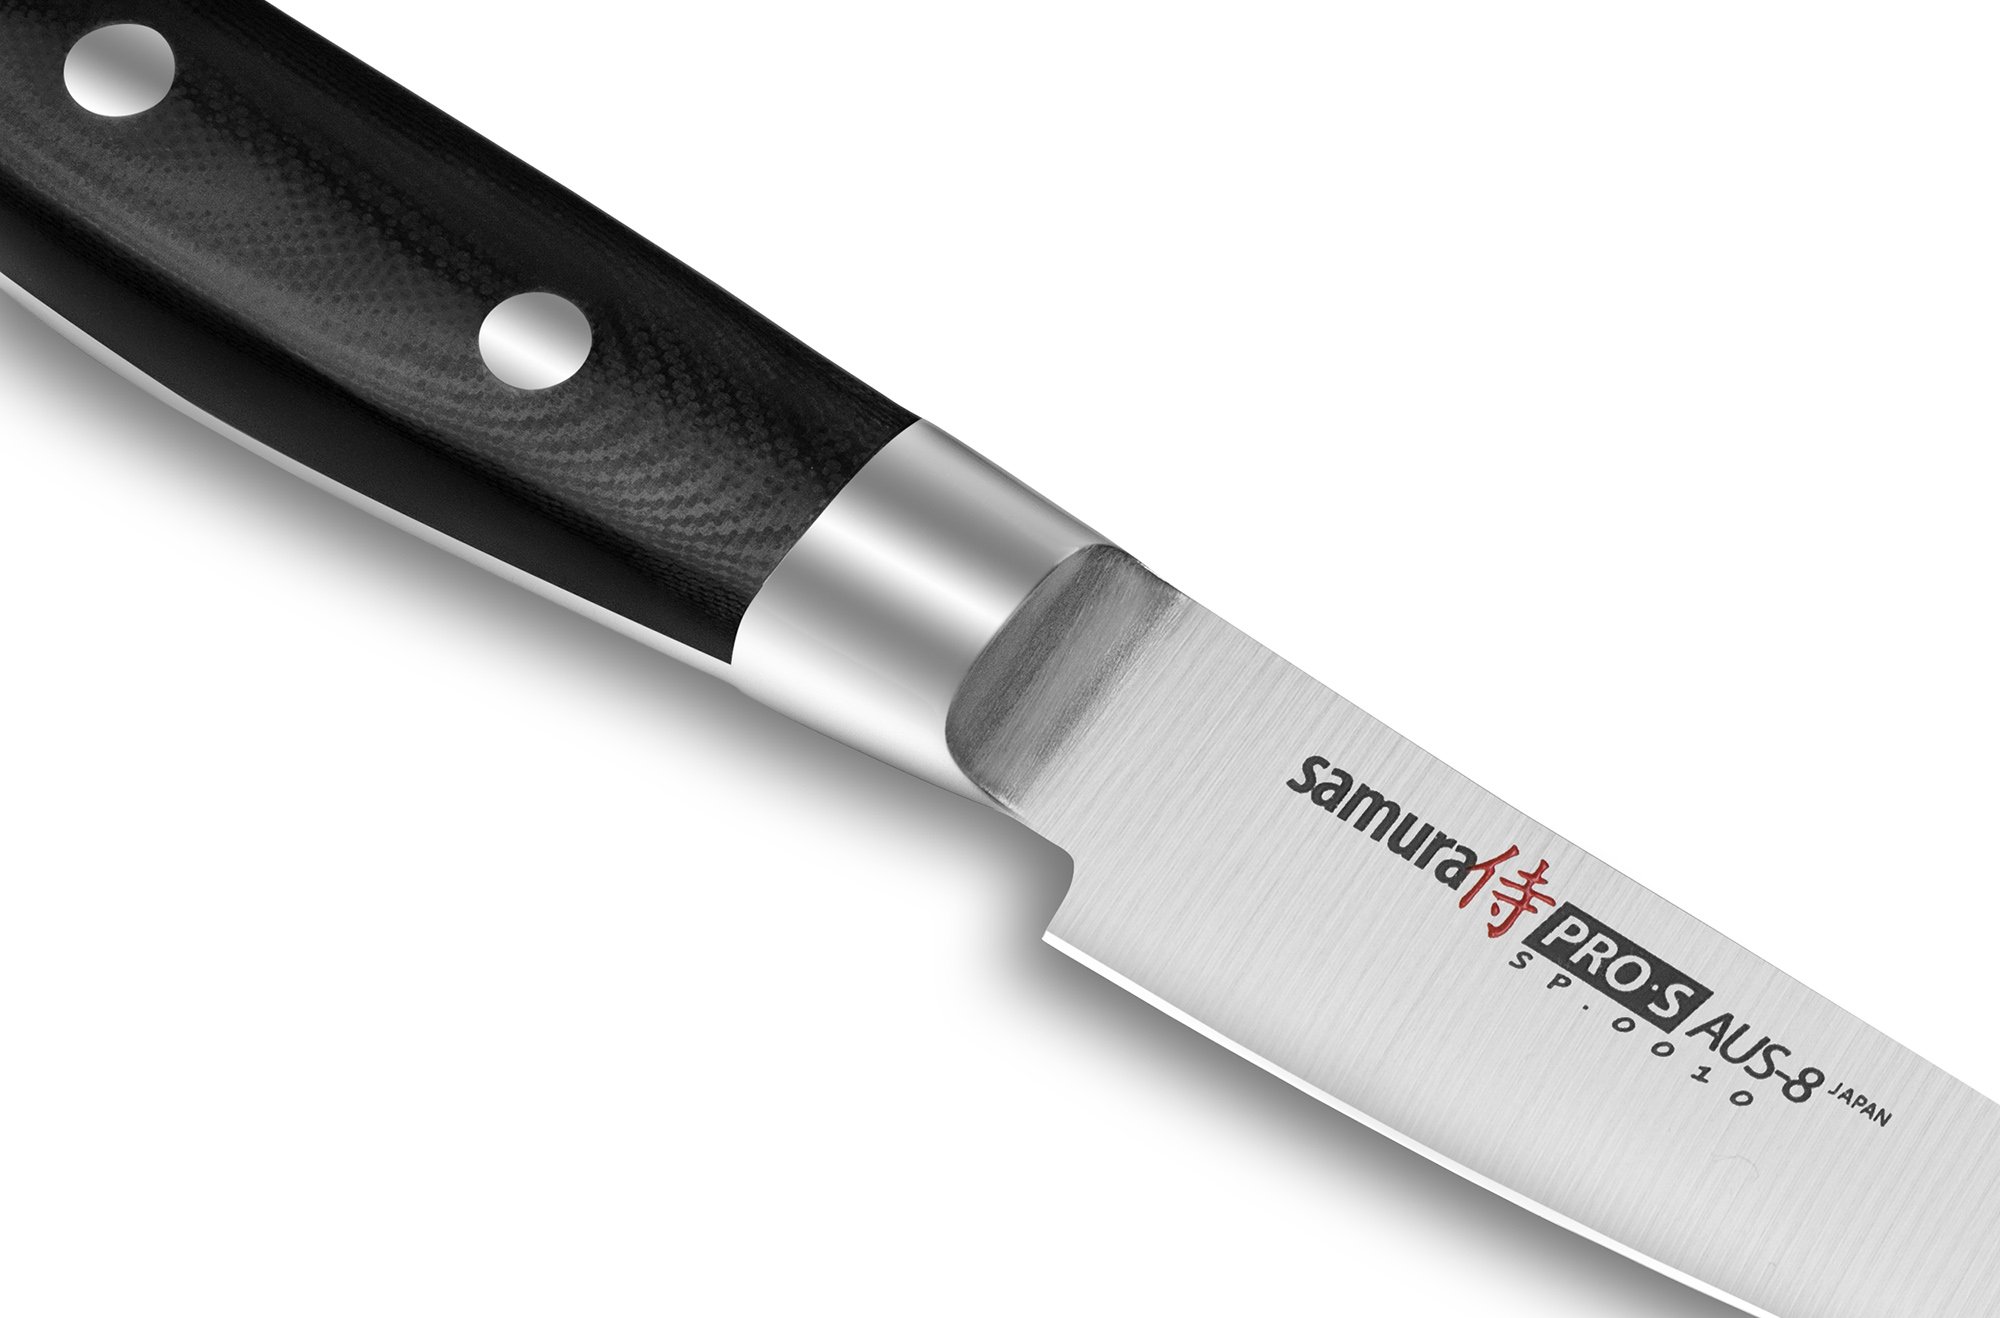 Кухонные ножи для овощей. Набор Samura Pro-s 5 ножей. Нож овощной Samura Pro-s. Samura нож для овощей Pro-s 8,8 см. Ножи японские кухонные Samura.